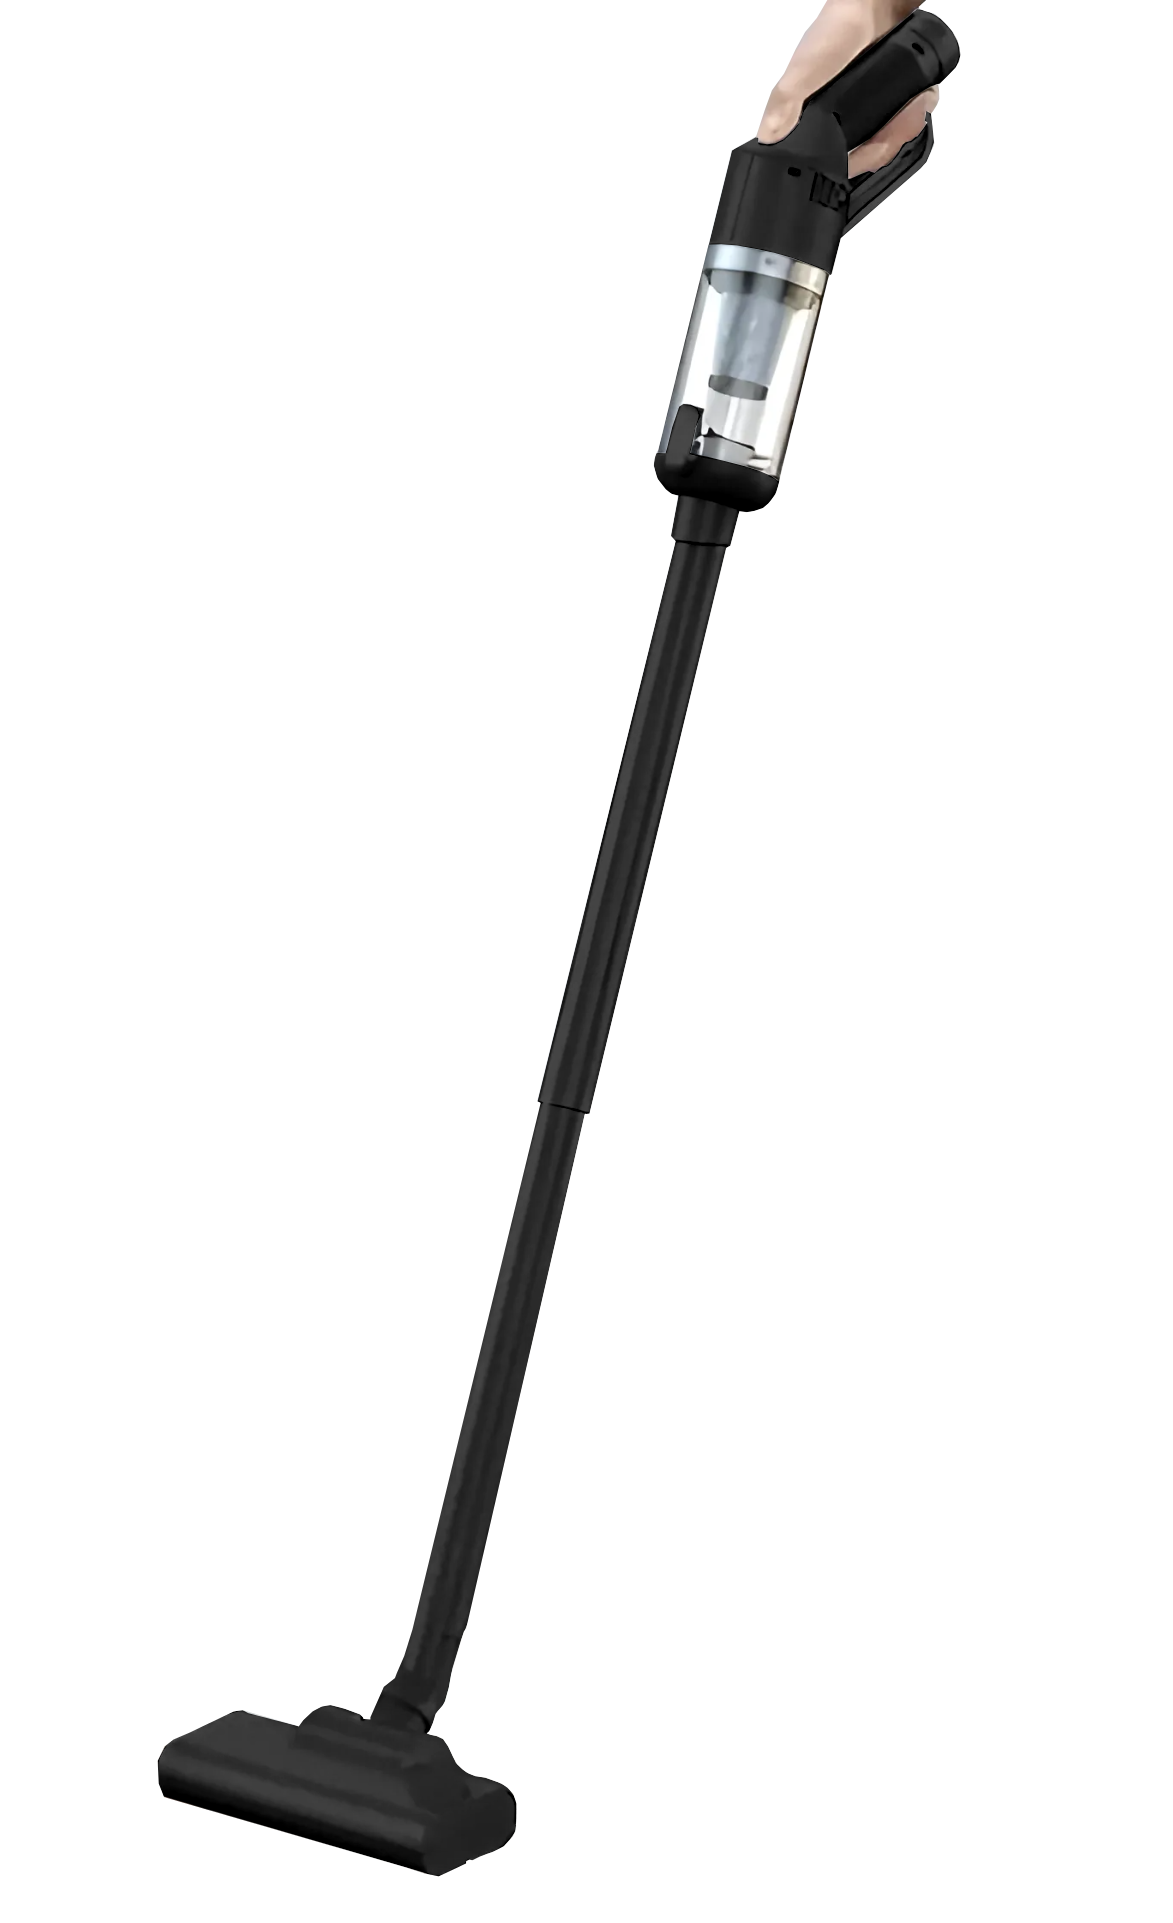 CARCAM Vacuum Cleaner LT-127 Black стилус carcam smart pencil id606 black